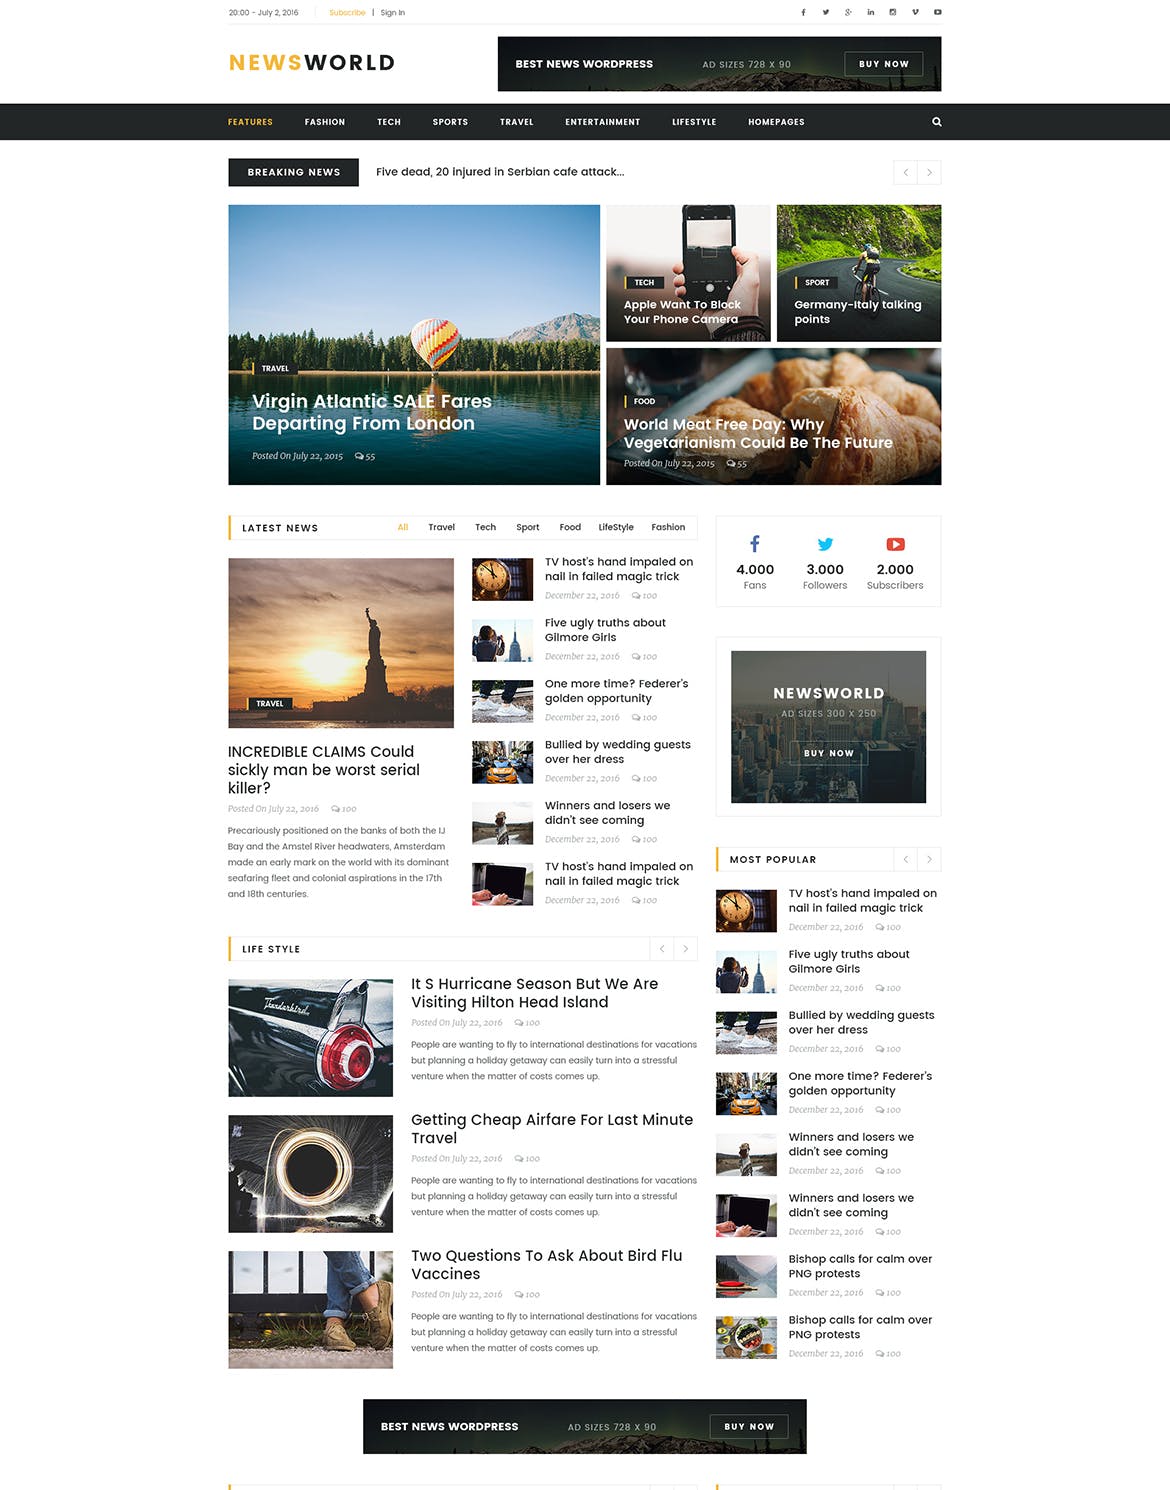 新闻资讯杂志类网站设计HTML模板蚂蚁素材精选 Newsworld | Mutil-Concept Magazine HTML5 Template插图(3)